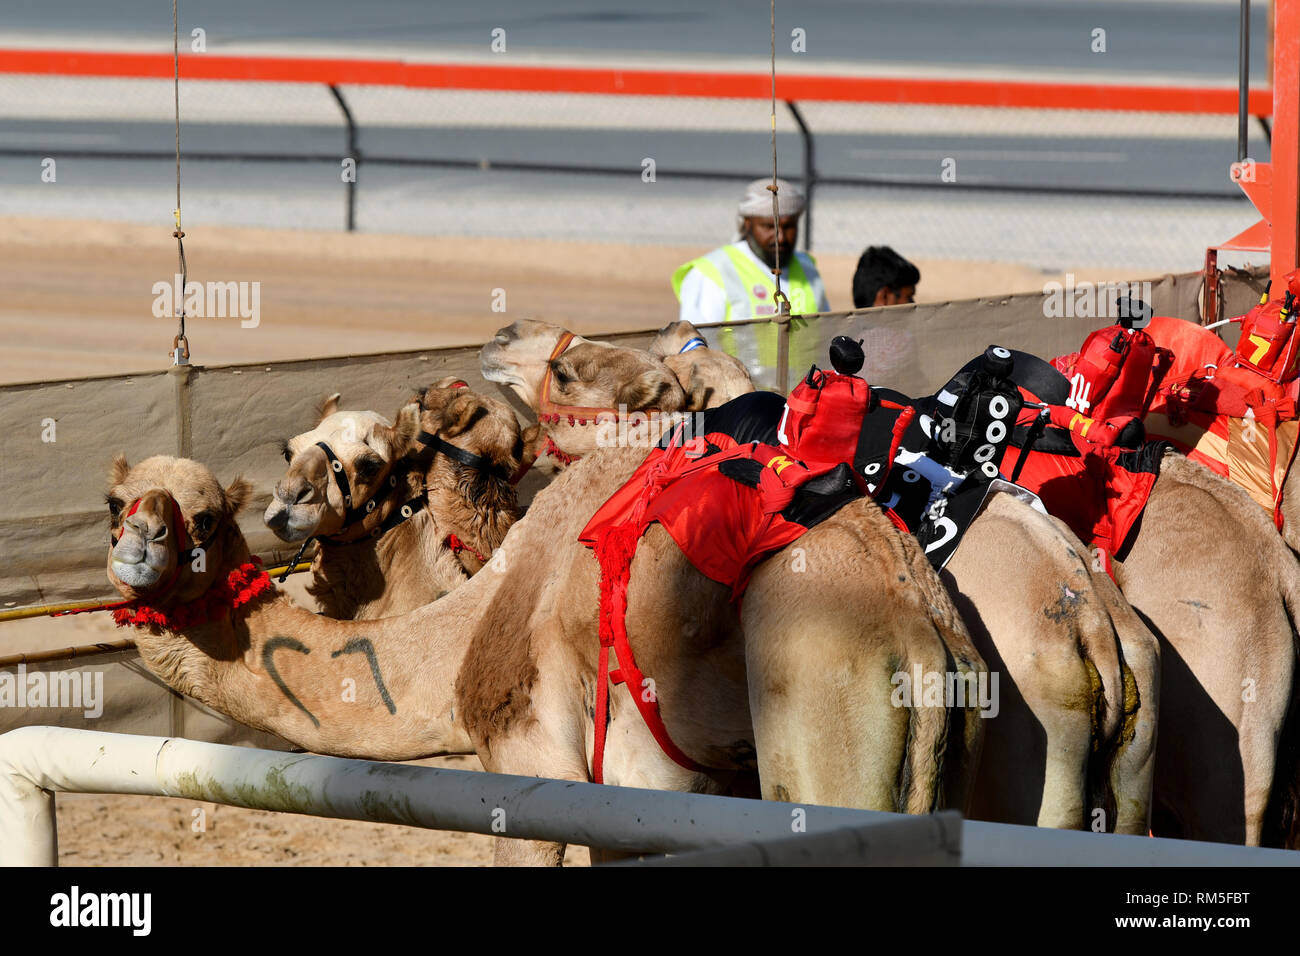 Les chameaux en attente au début pour la prochaine course Banque D'Images